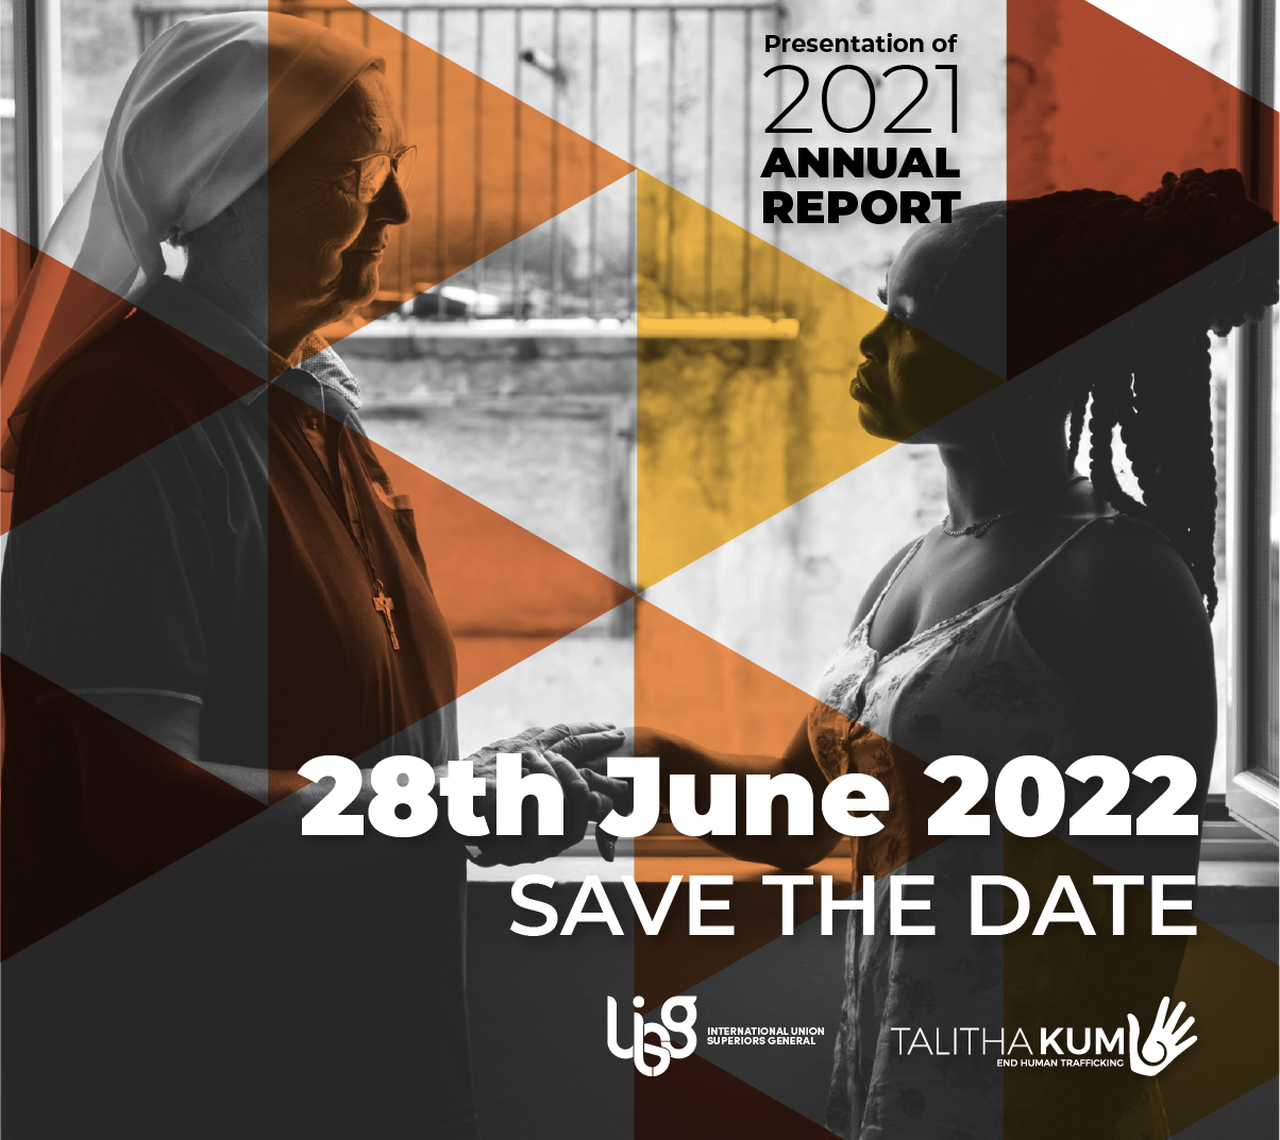 SAVE THE DATE! MARTEDÌ 28 GIUGNO PRESENTAZIONE ONLINE DEL REPORT DI TALITHA KUM 2021